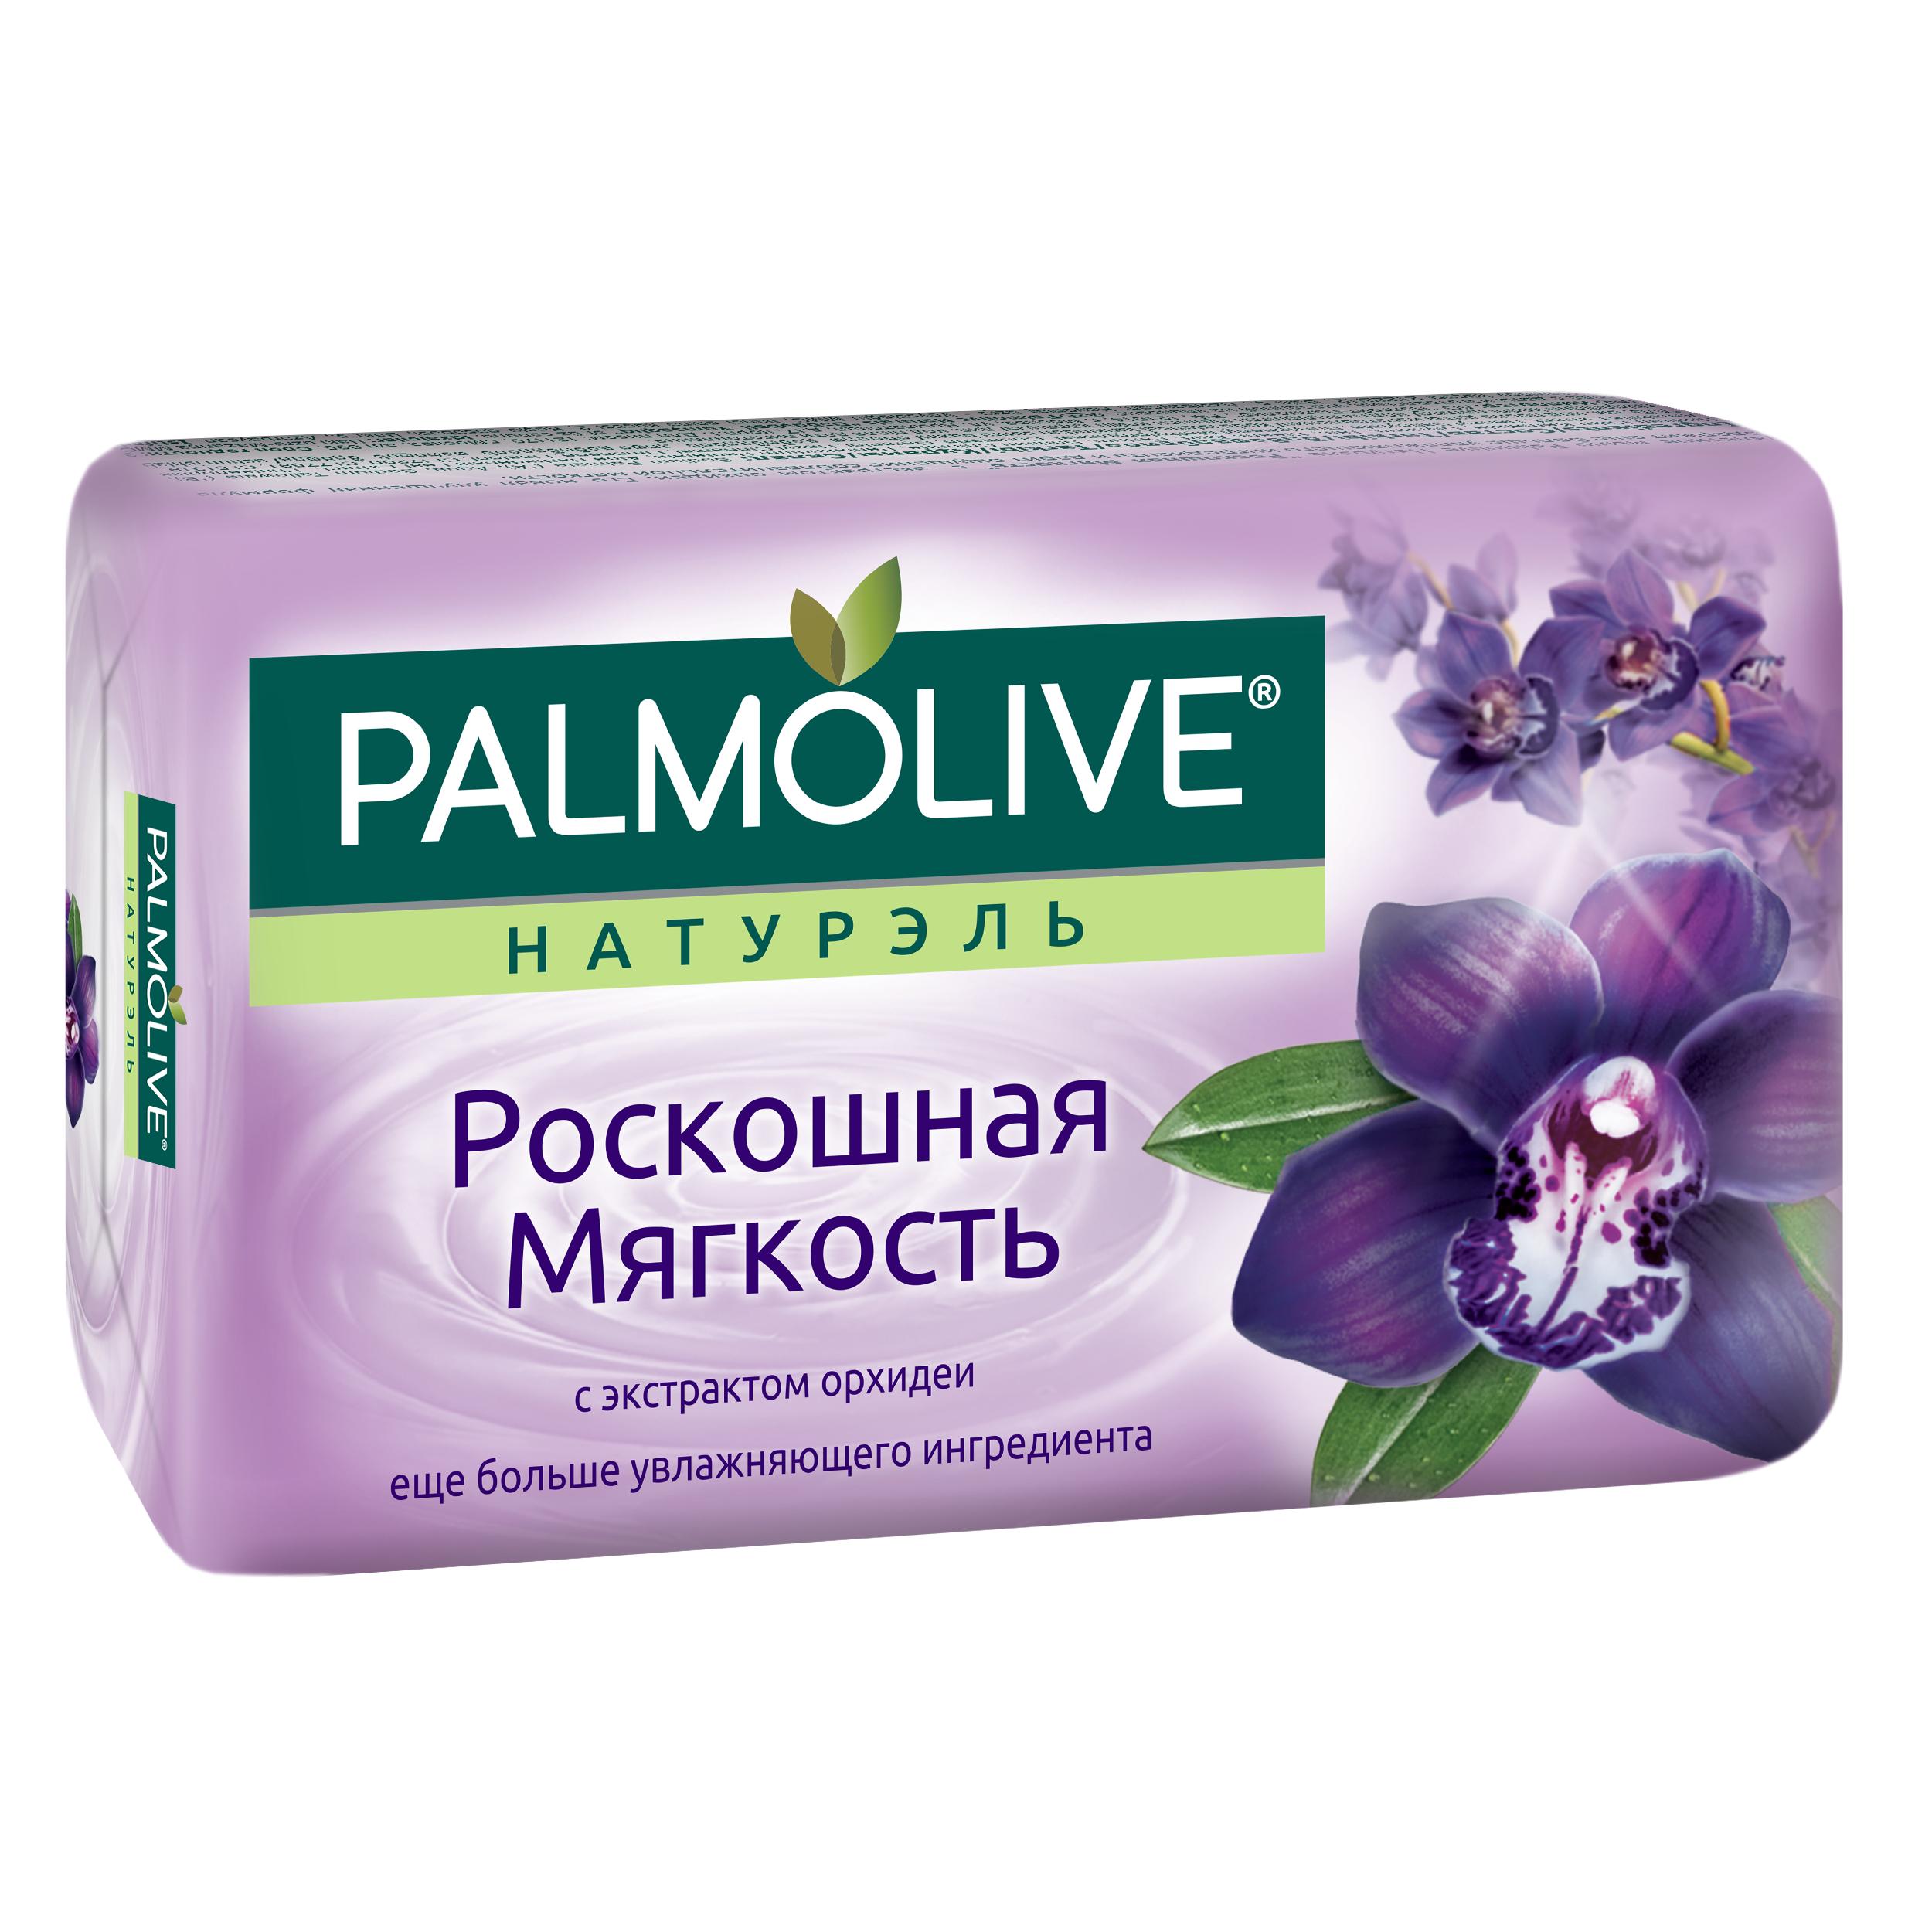 Мыло Palmolive Роскошная мягкость 90 гр., обертка фольга/бумага